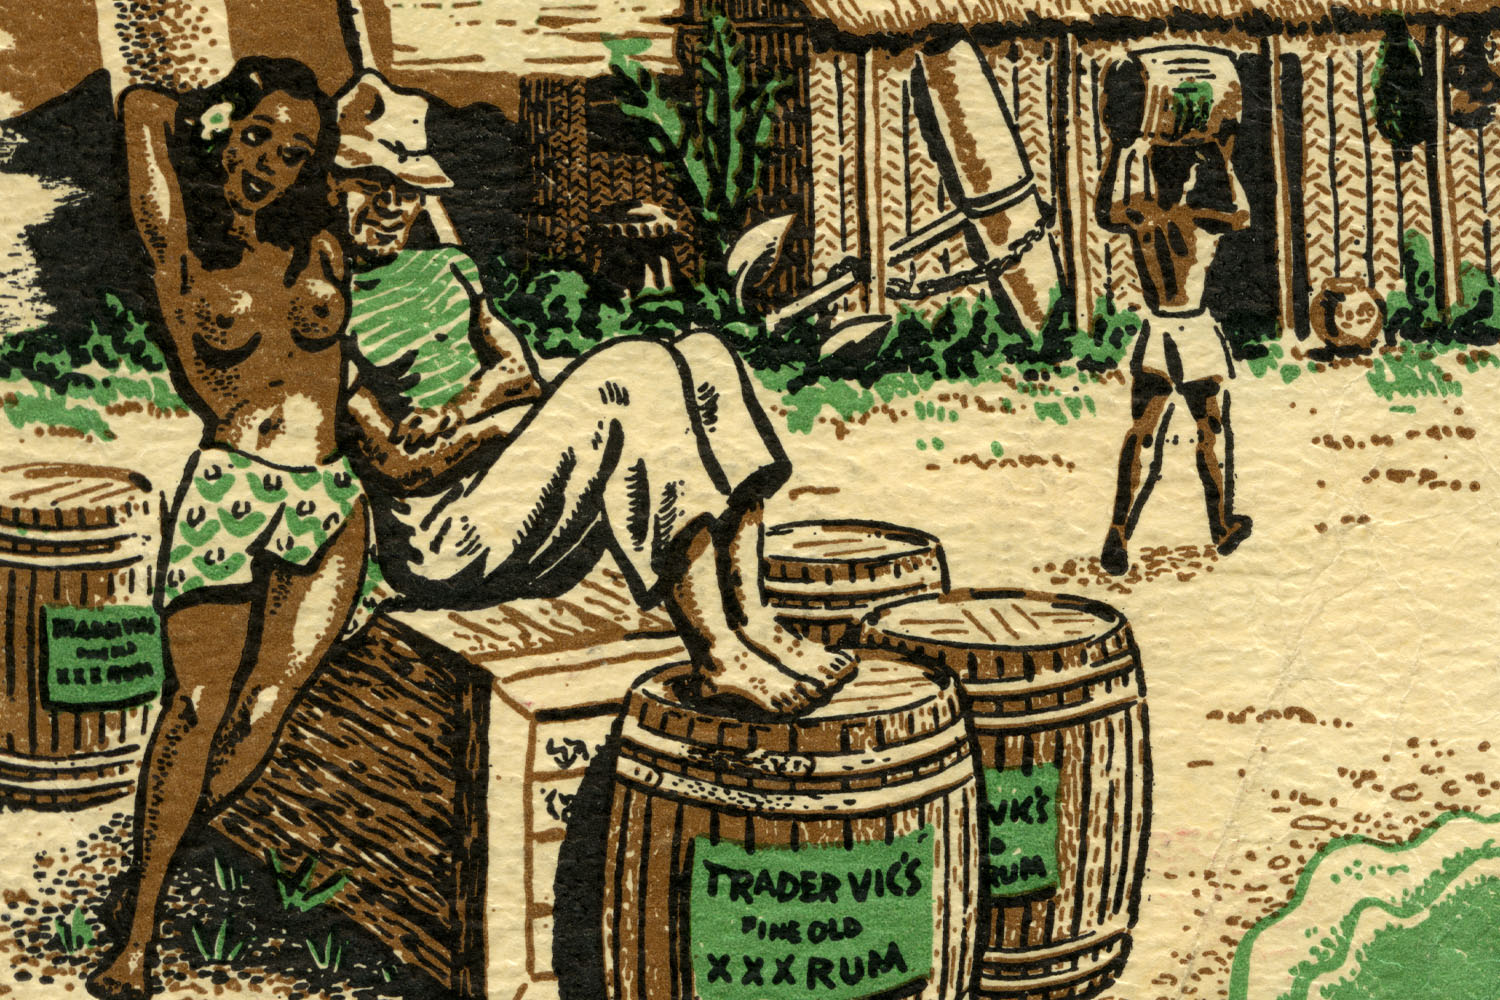 trader vics archival rum